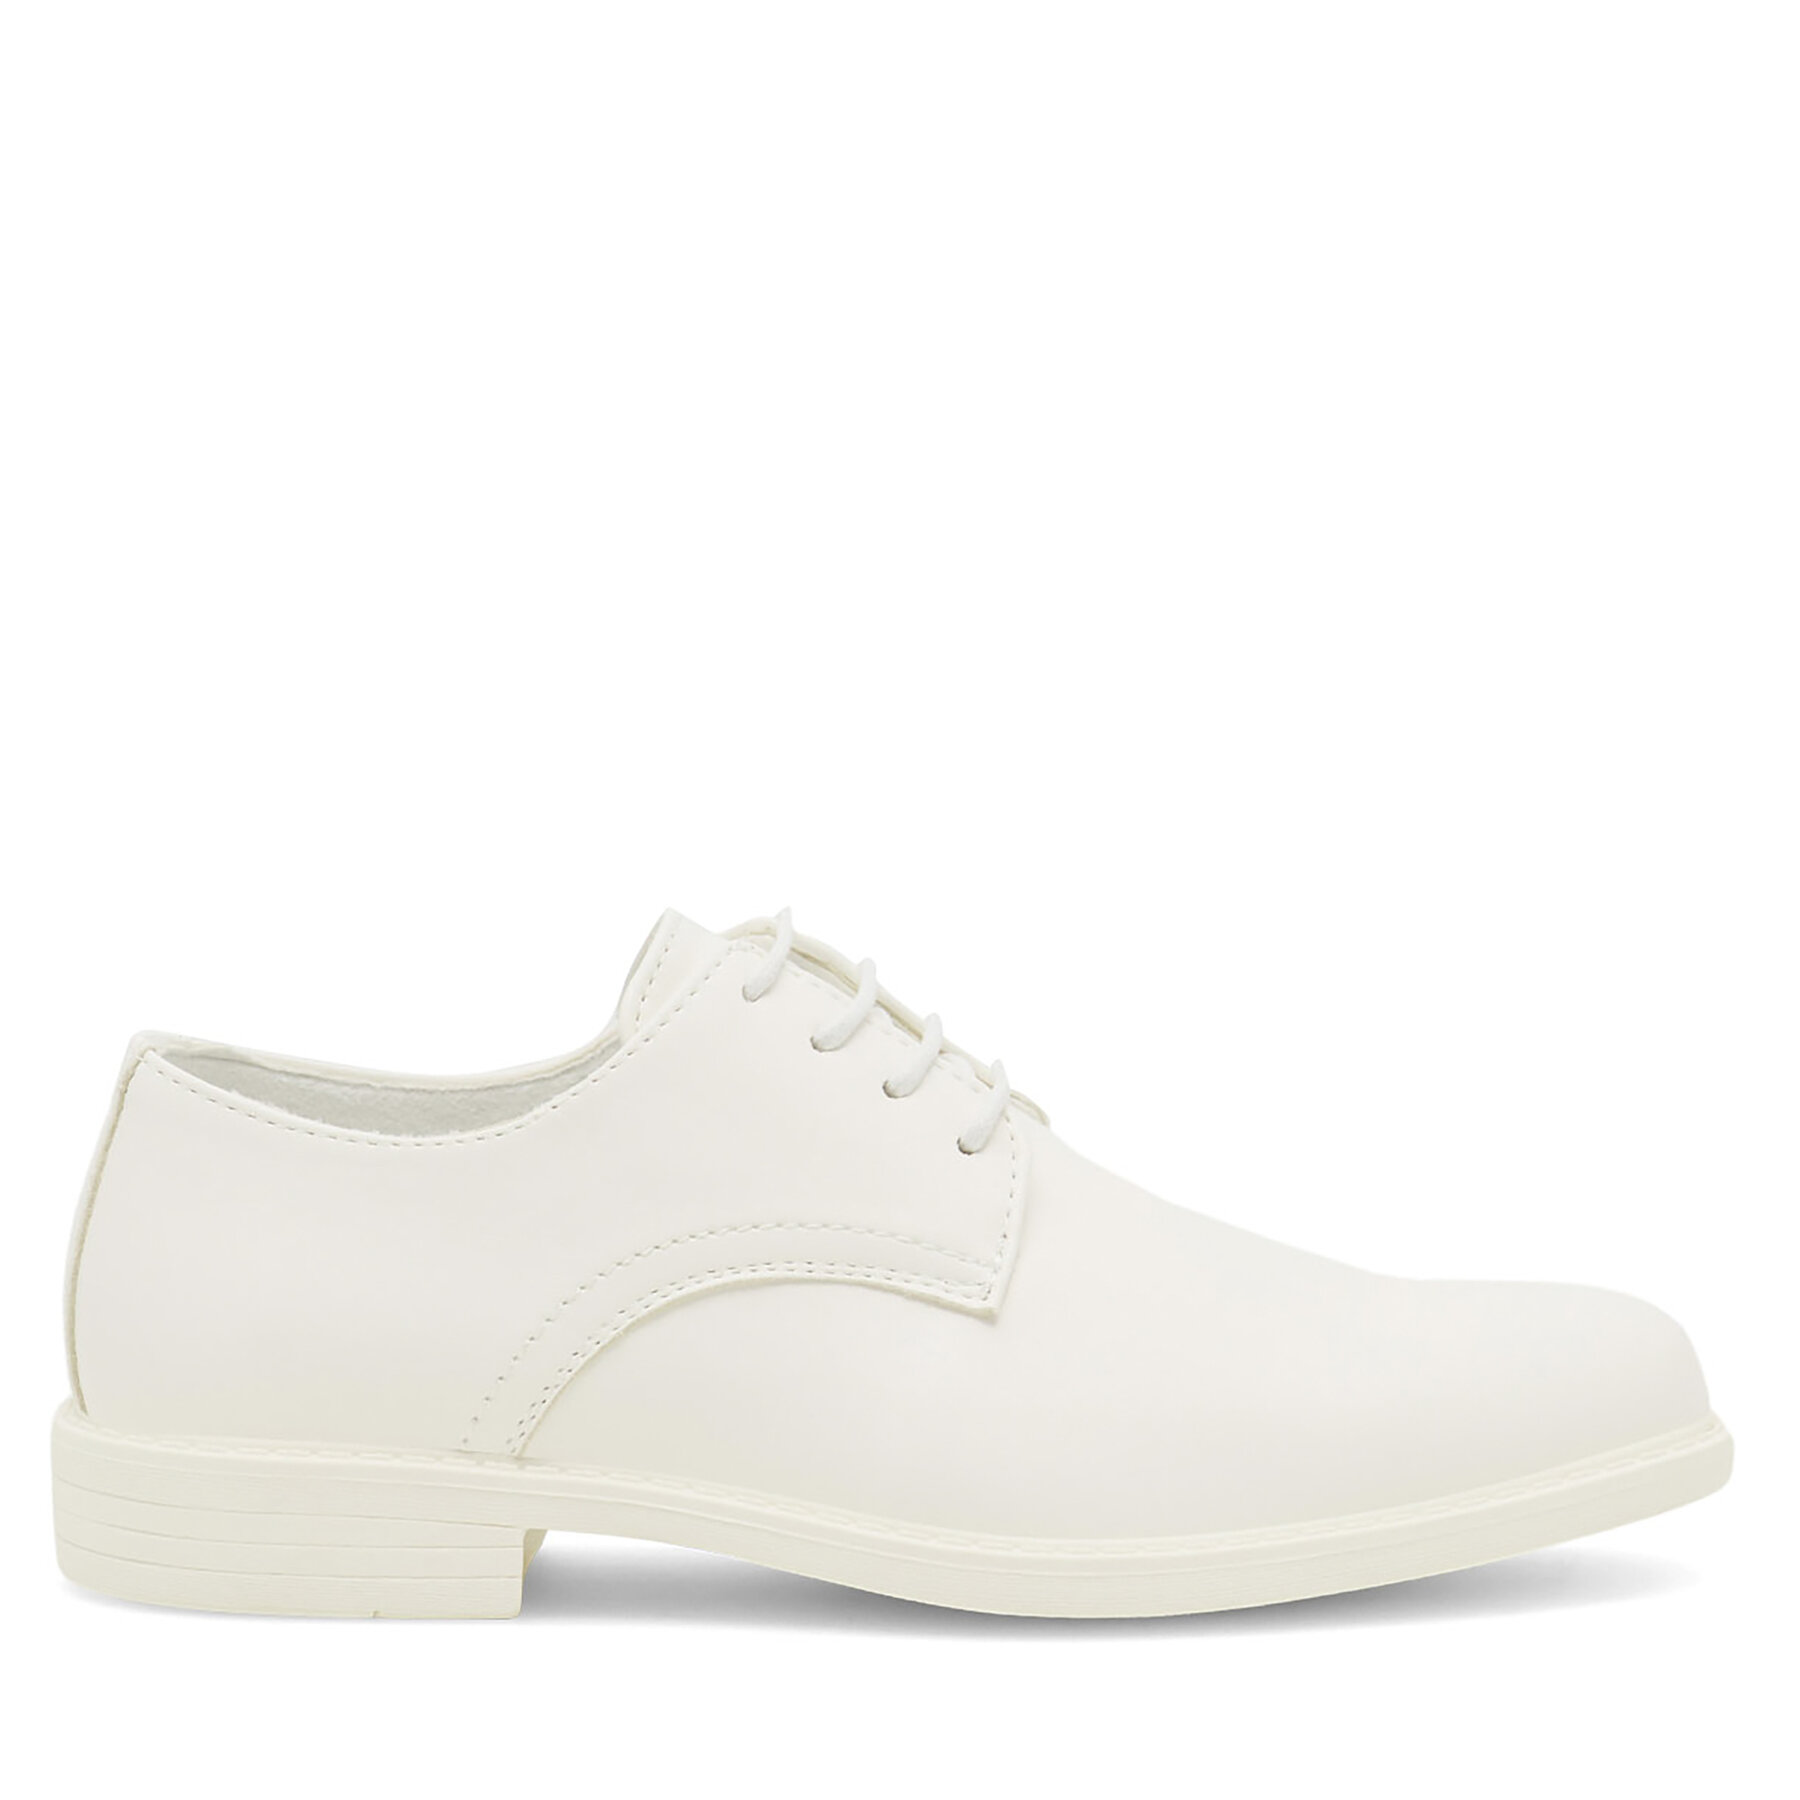 Cipele Ottimo CF1986-1 White